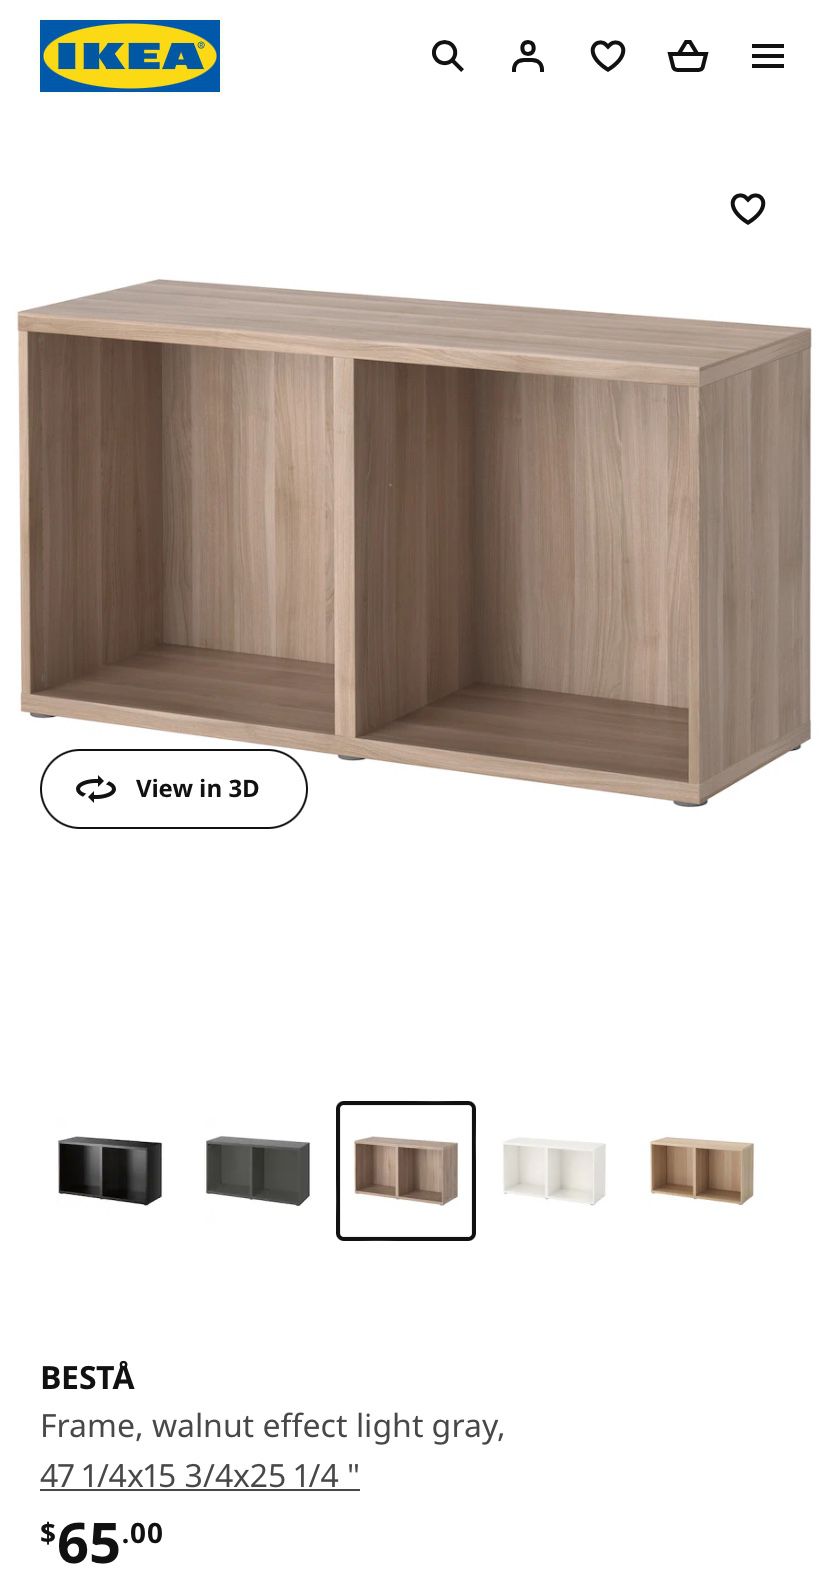 2 IKEA 47” Besta Frame Shelves In Light Grey Oak